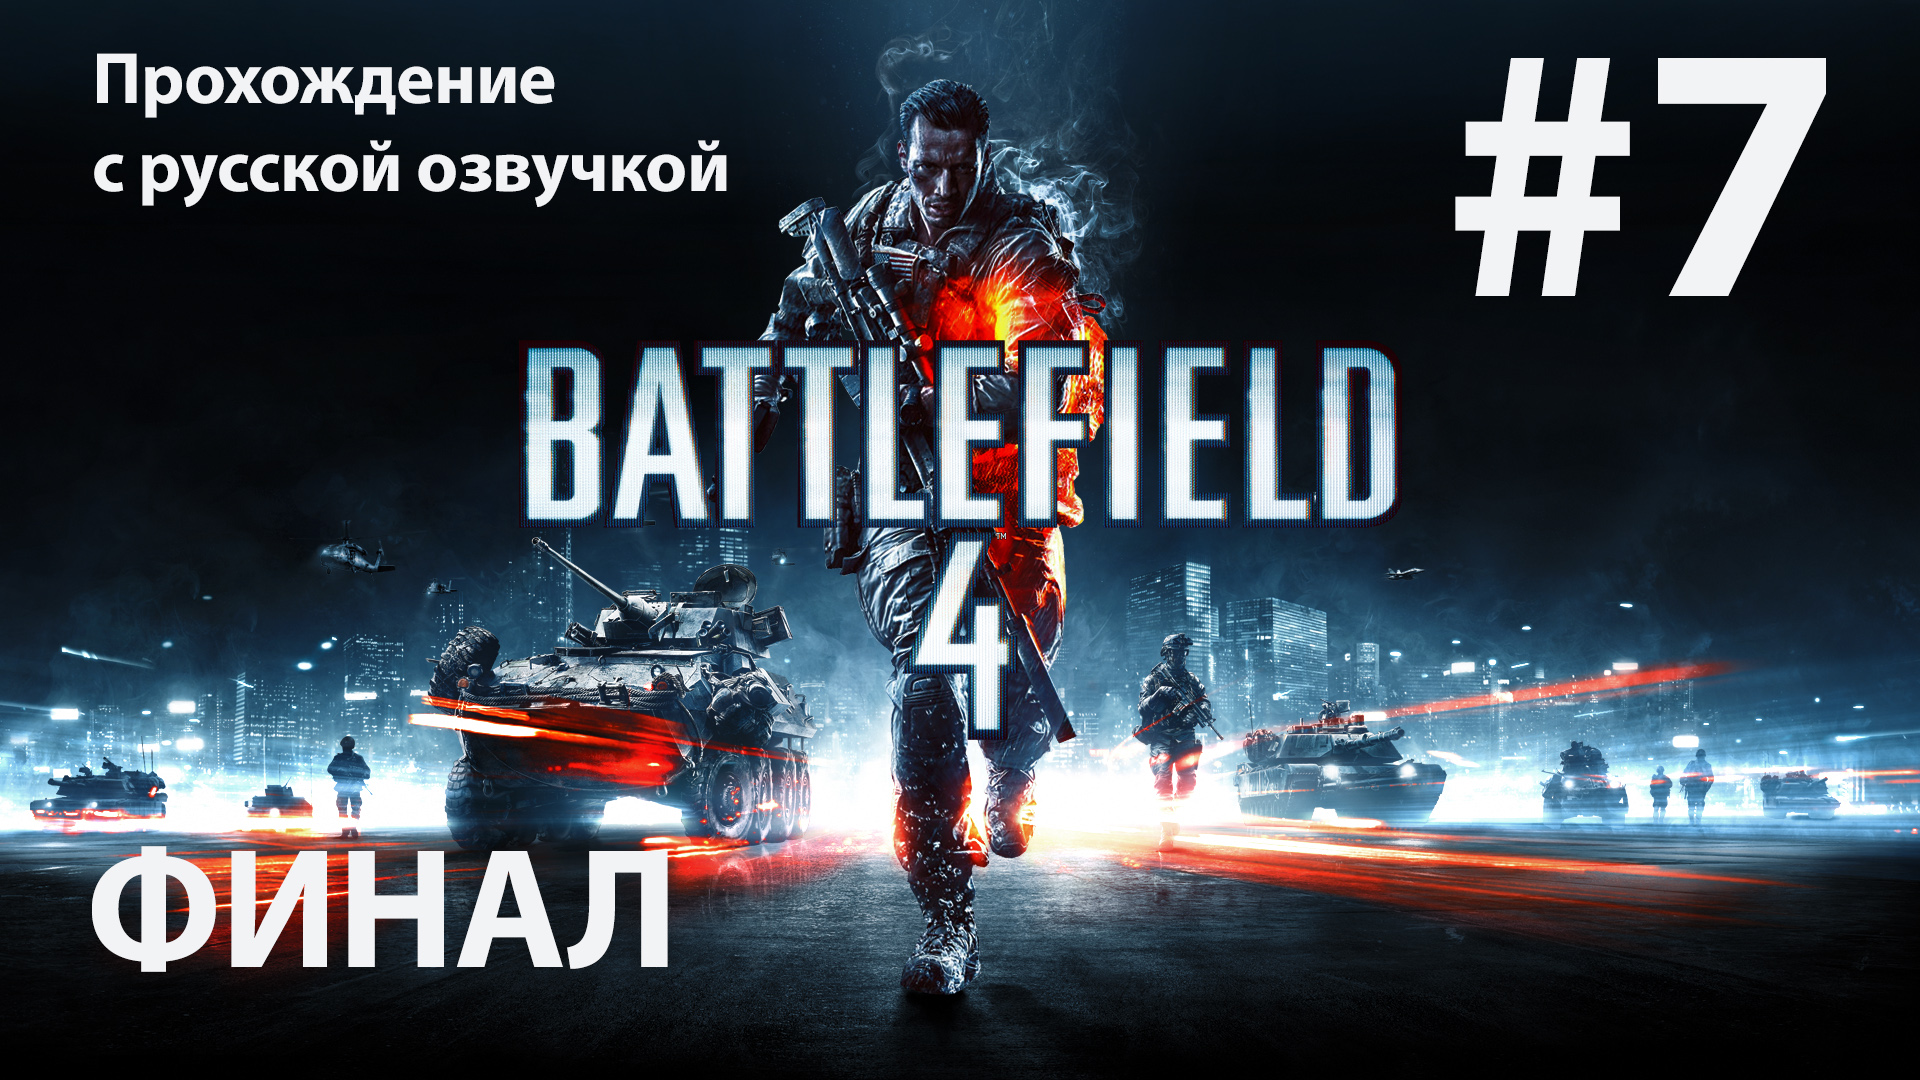 Суэц: Игрофильм #7 [Battlefield 4] русская озвучка